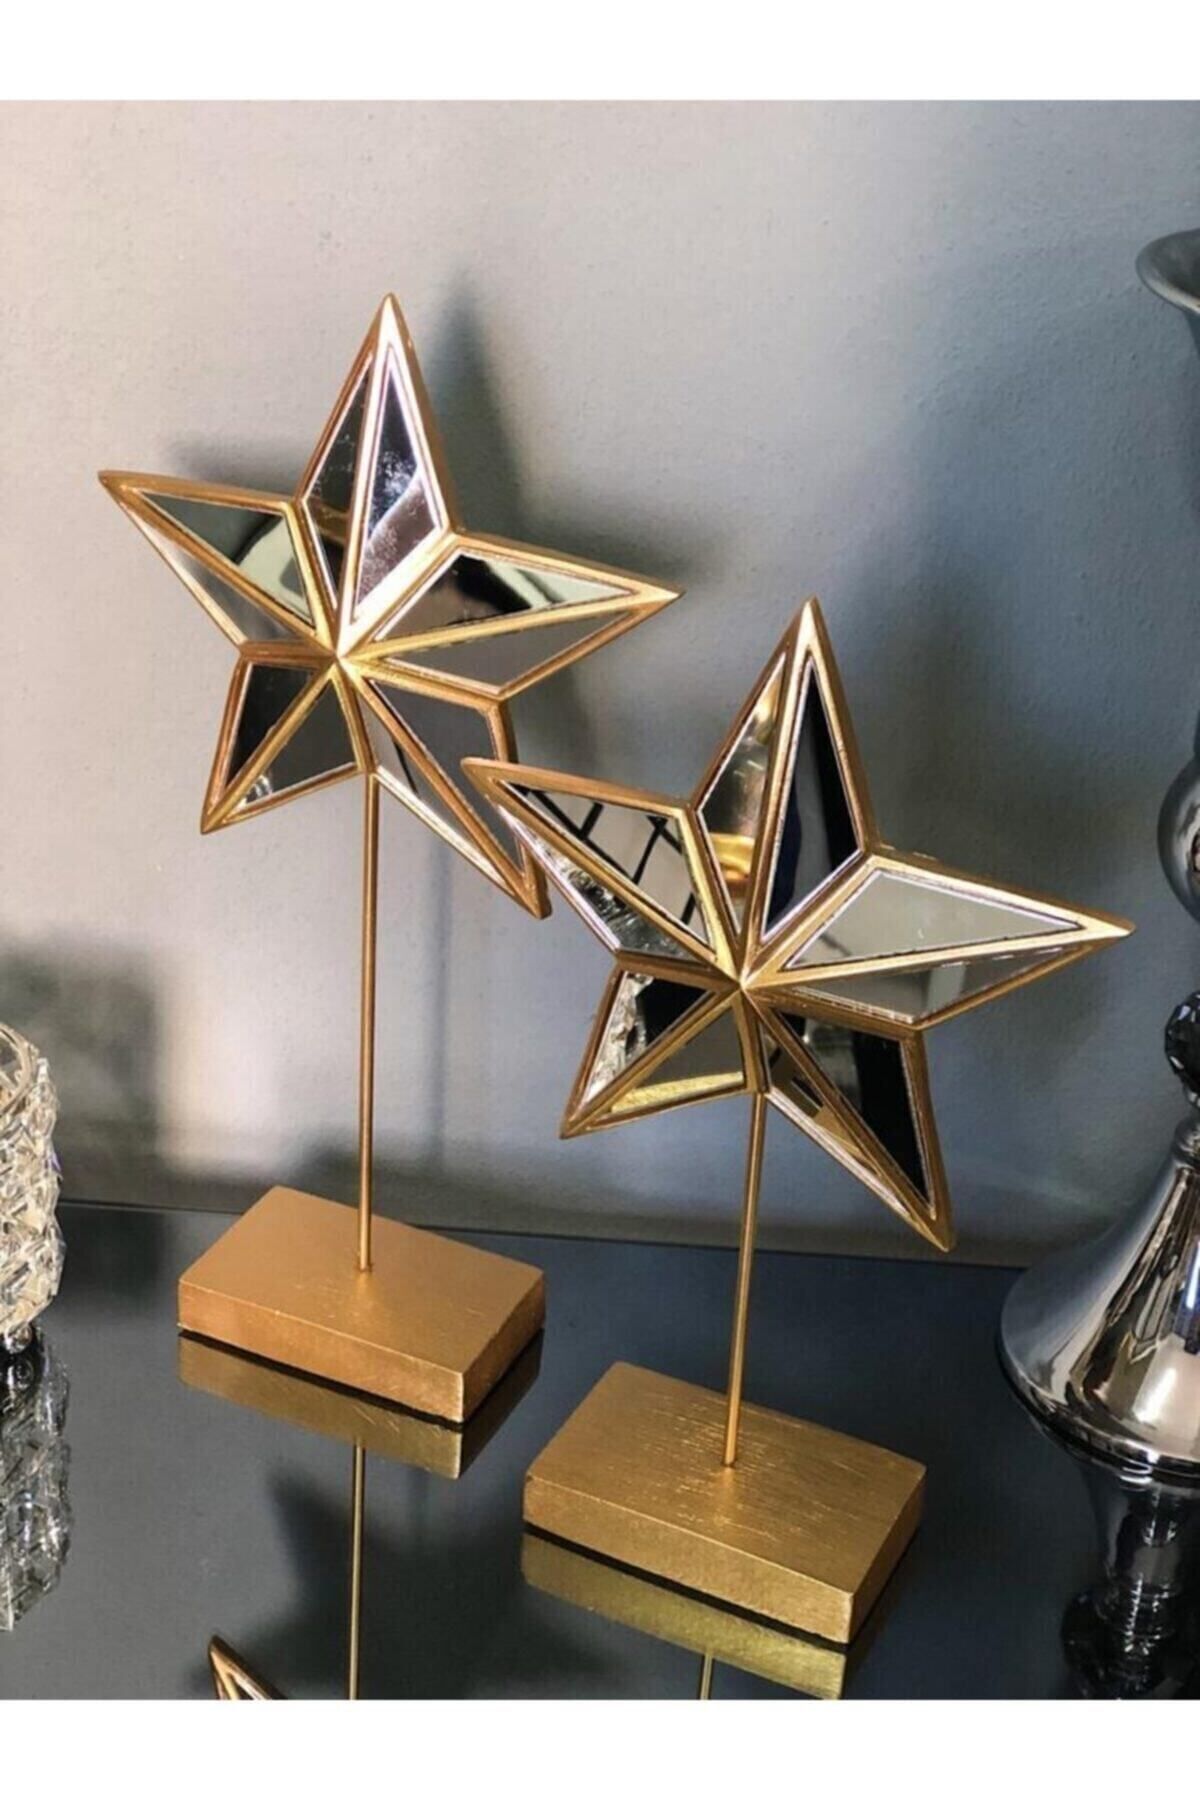 Genel Markalar 2'li Yıldız Superstar Gold Altın Şık Tasarım Ev Ofis Aynalı Yıldız Obje Biblo Büyük Boy Dekoratif